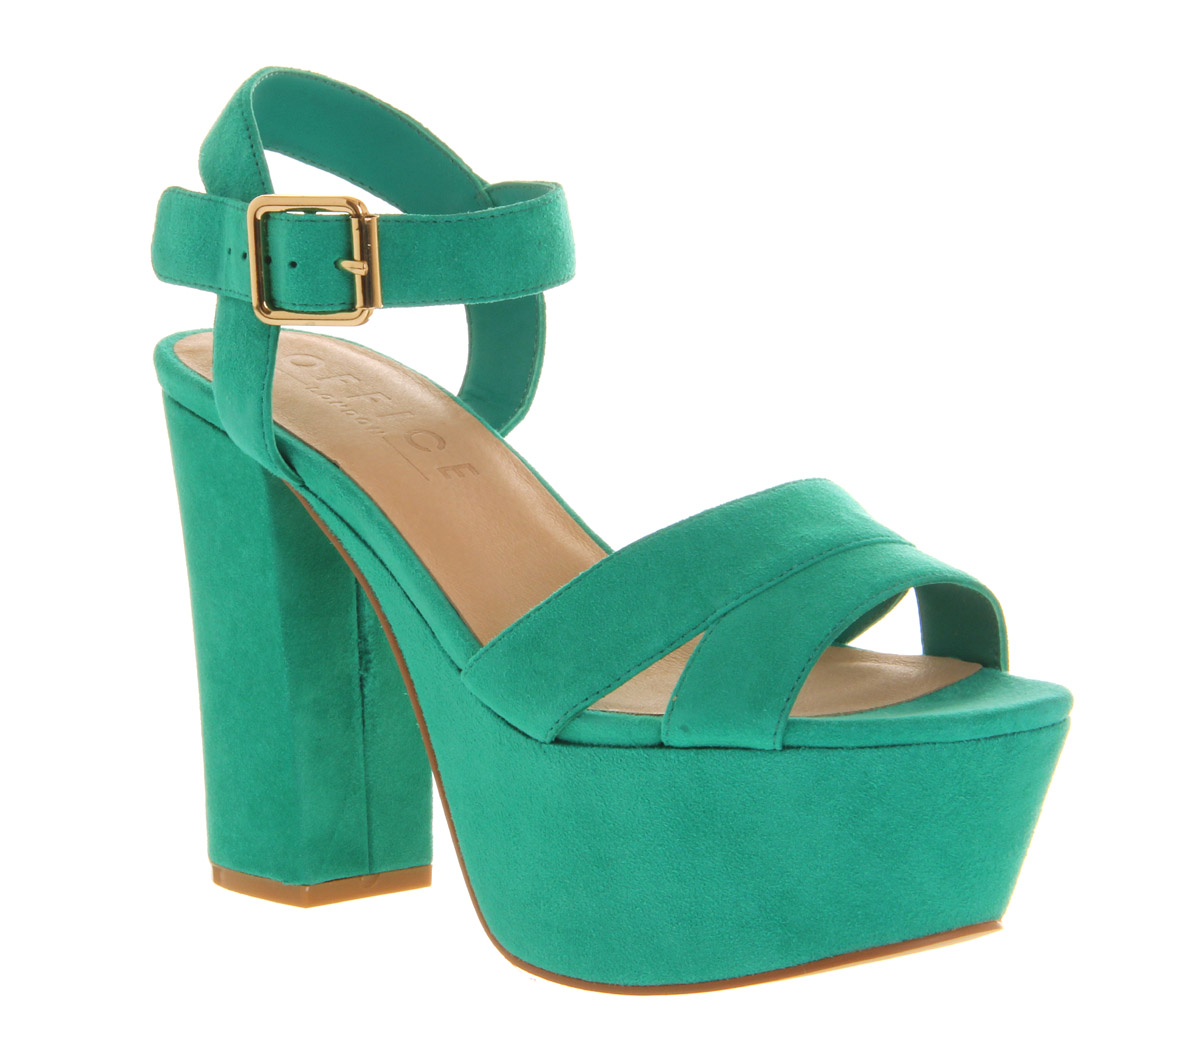 green suede sandals uk